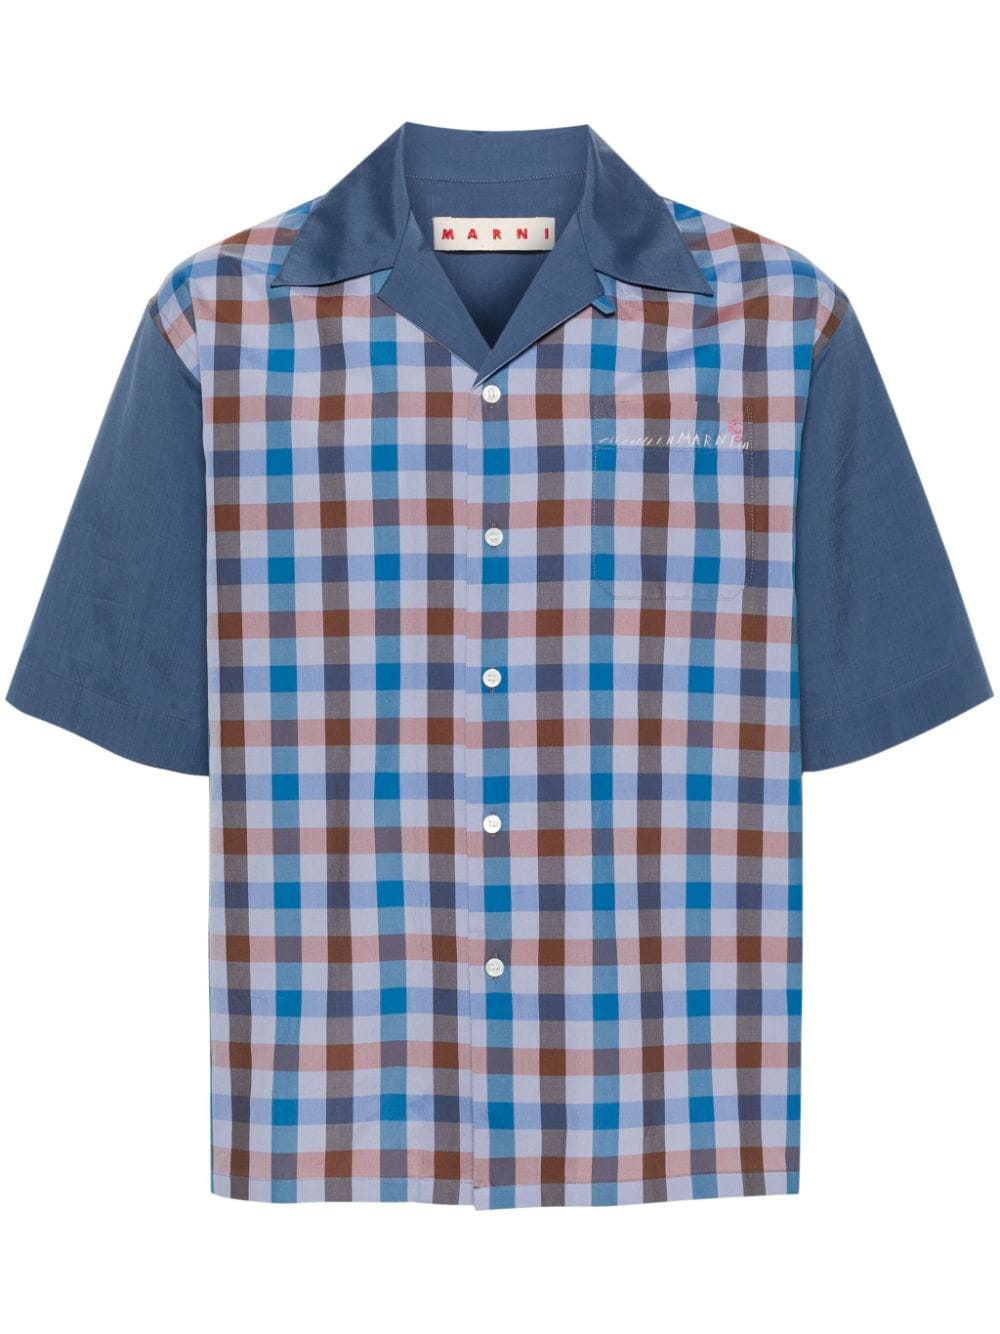 Image 1 of Marni gingham-pattern bowling shirt